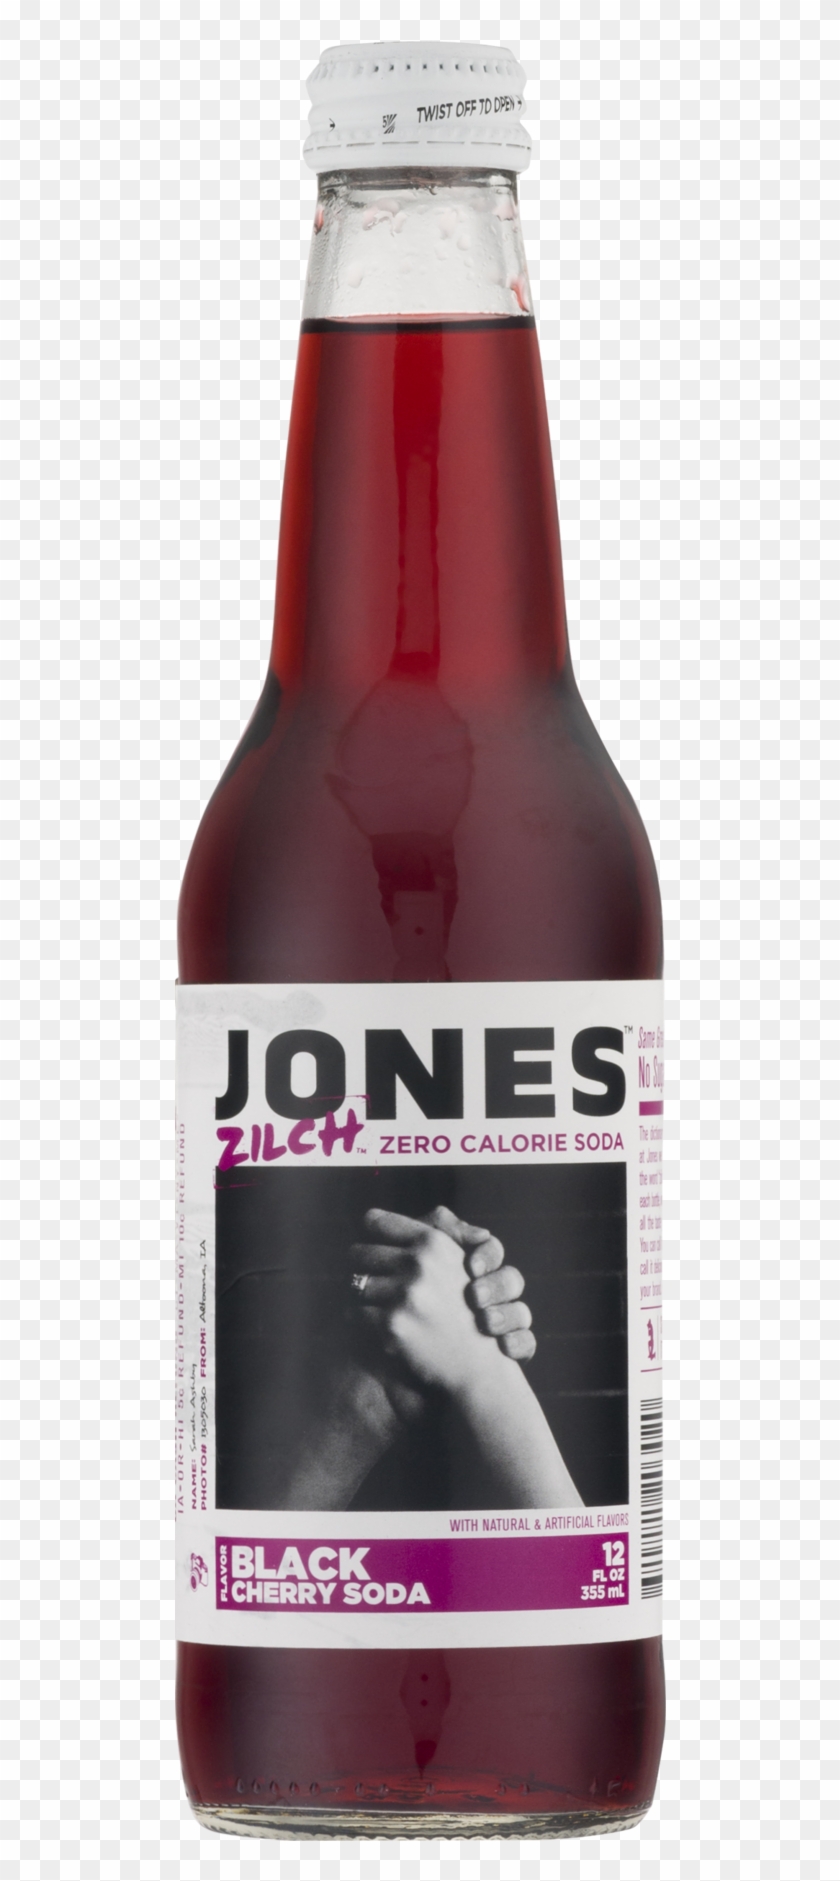 Jones Zilch Zero Calorie Black Cherry Flavor Soda, - Beer Bottle Clipart #2639003